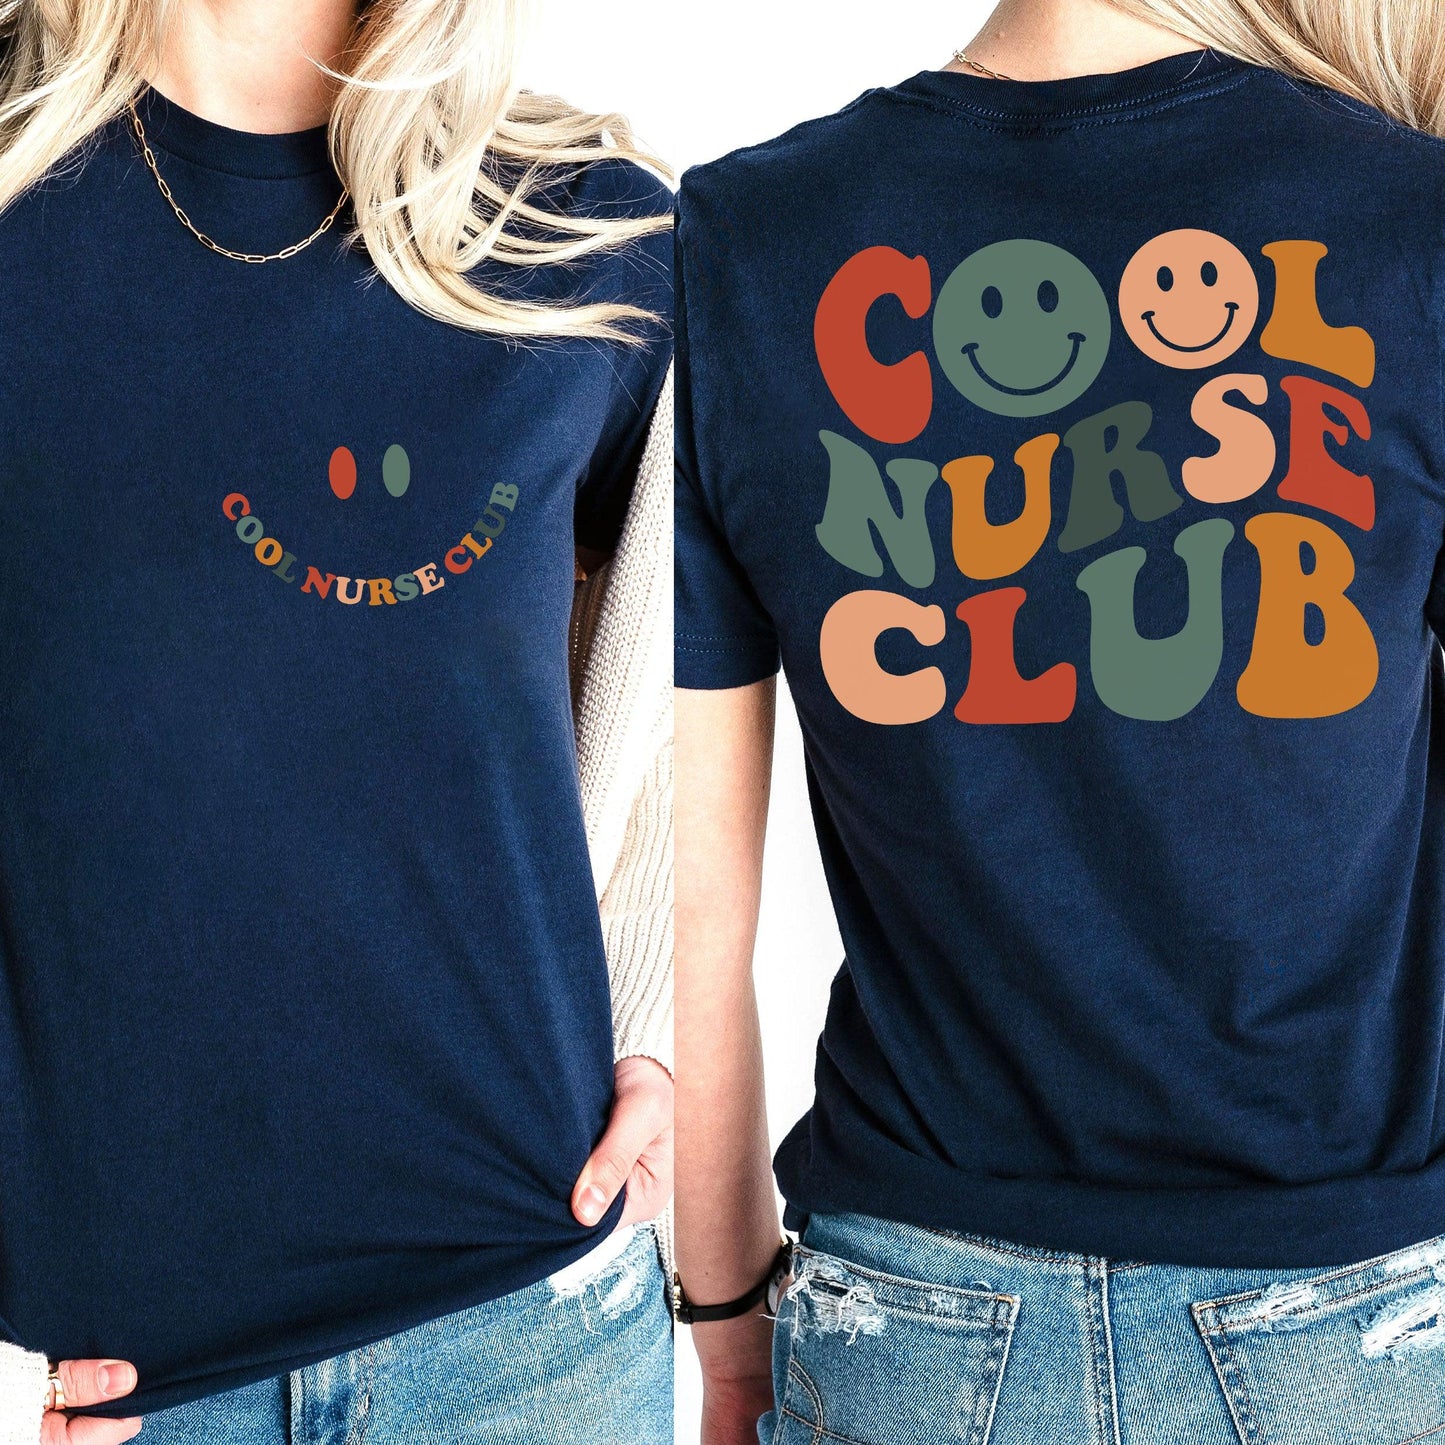 Cooles Nurse Club Sweatshirt und Hoodie - Geschenk für Krankenschwester - GiftHaus